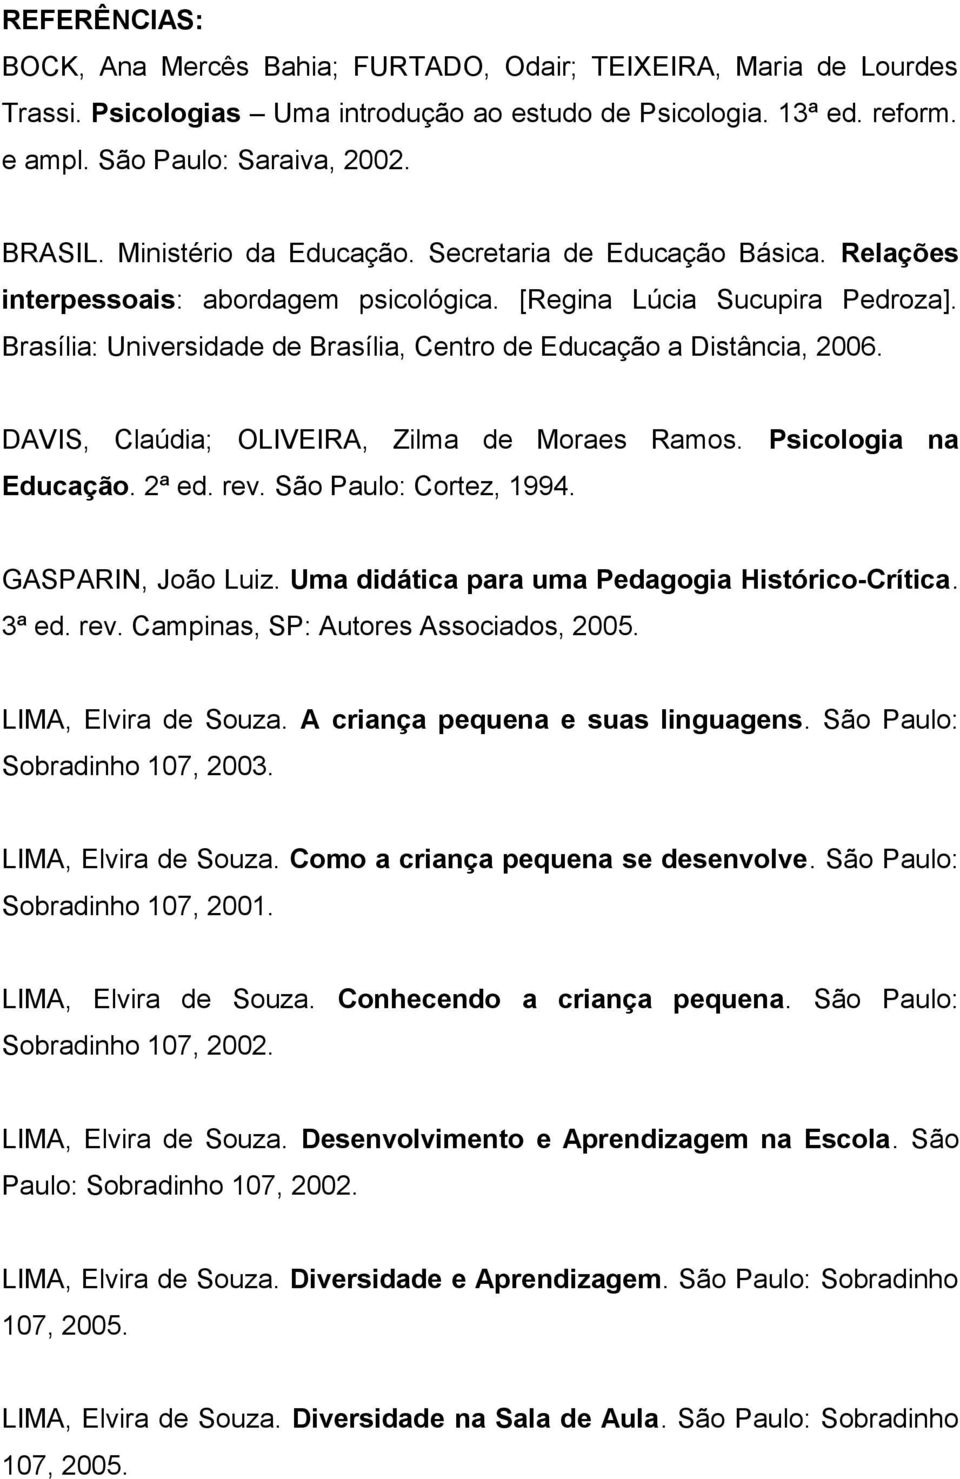 Brasília: Universidade de Brasília, Centro de Educação a Distância, 2006. DAVIS, Claúdia; OLIVEIRA, Zilma de Moraes Ramos. Psicologia na Educação. 2ª ed. rev. São Paulo: Cortez, 1994.